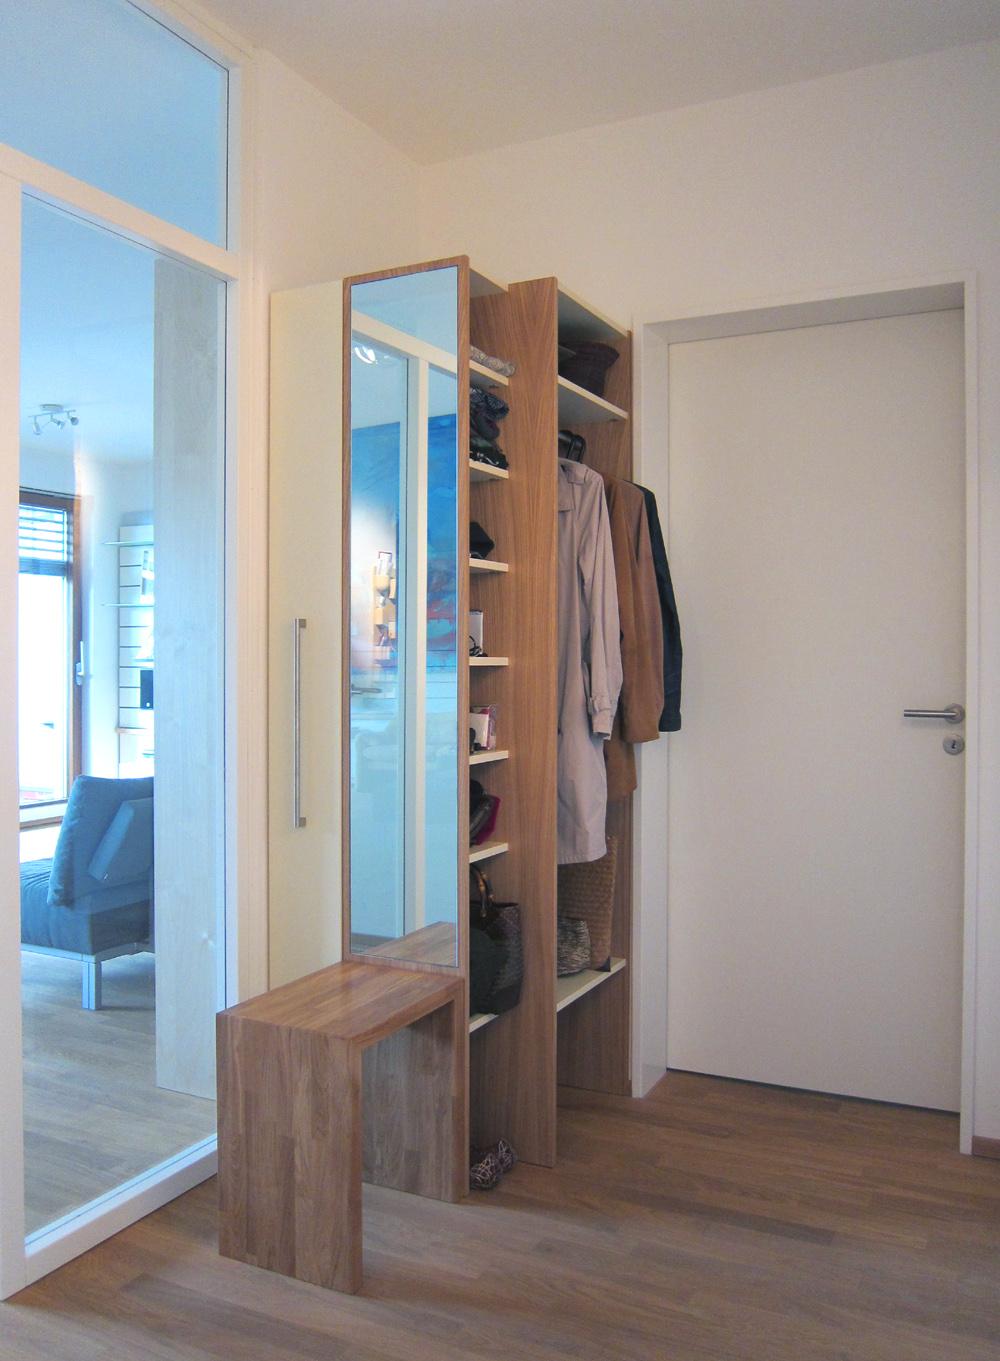 Garderobe mit Schuhschrank #spiegel #garderobe #laminat #holzgarderobe #schuhschrank ©Birgit Hansen